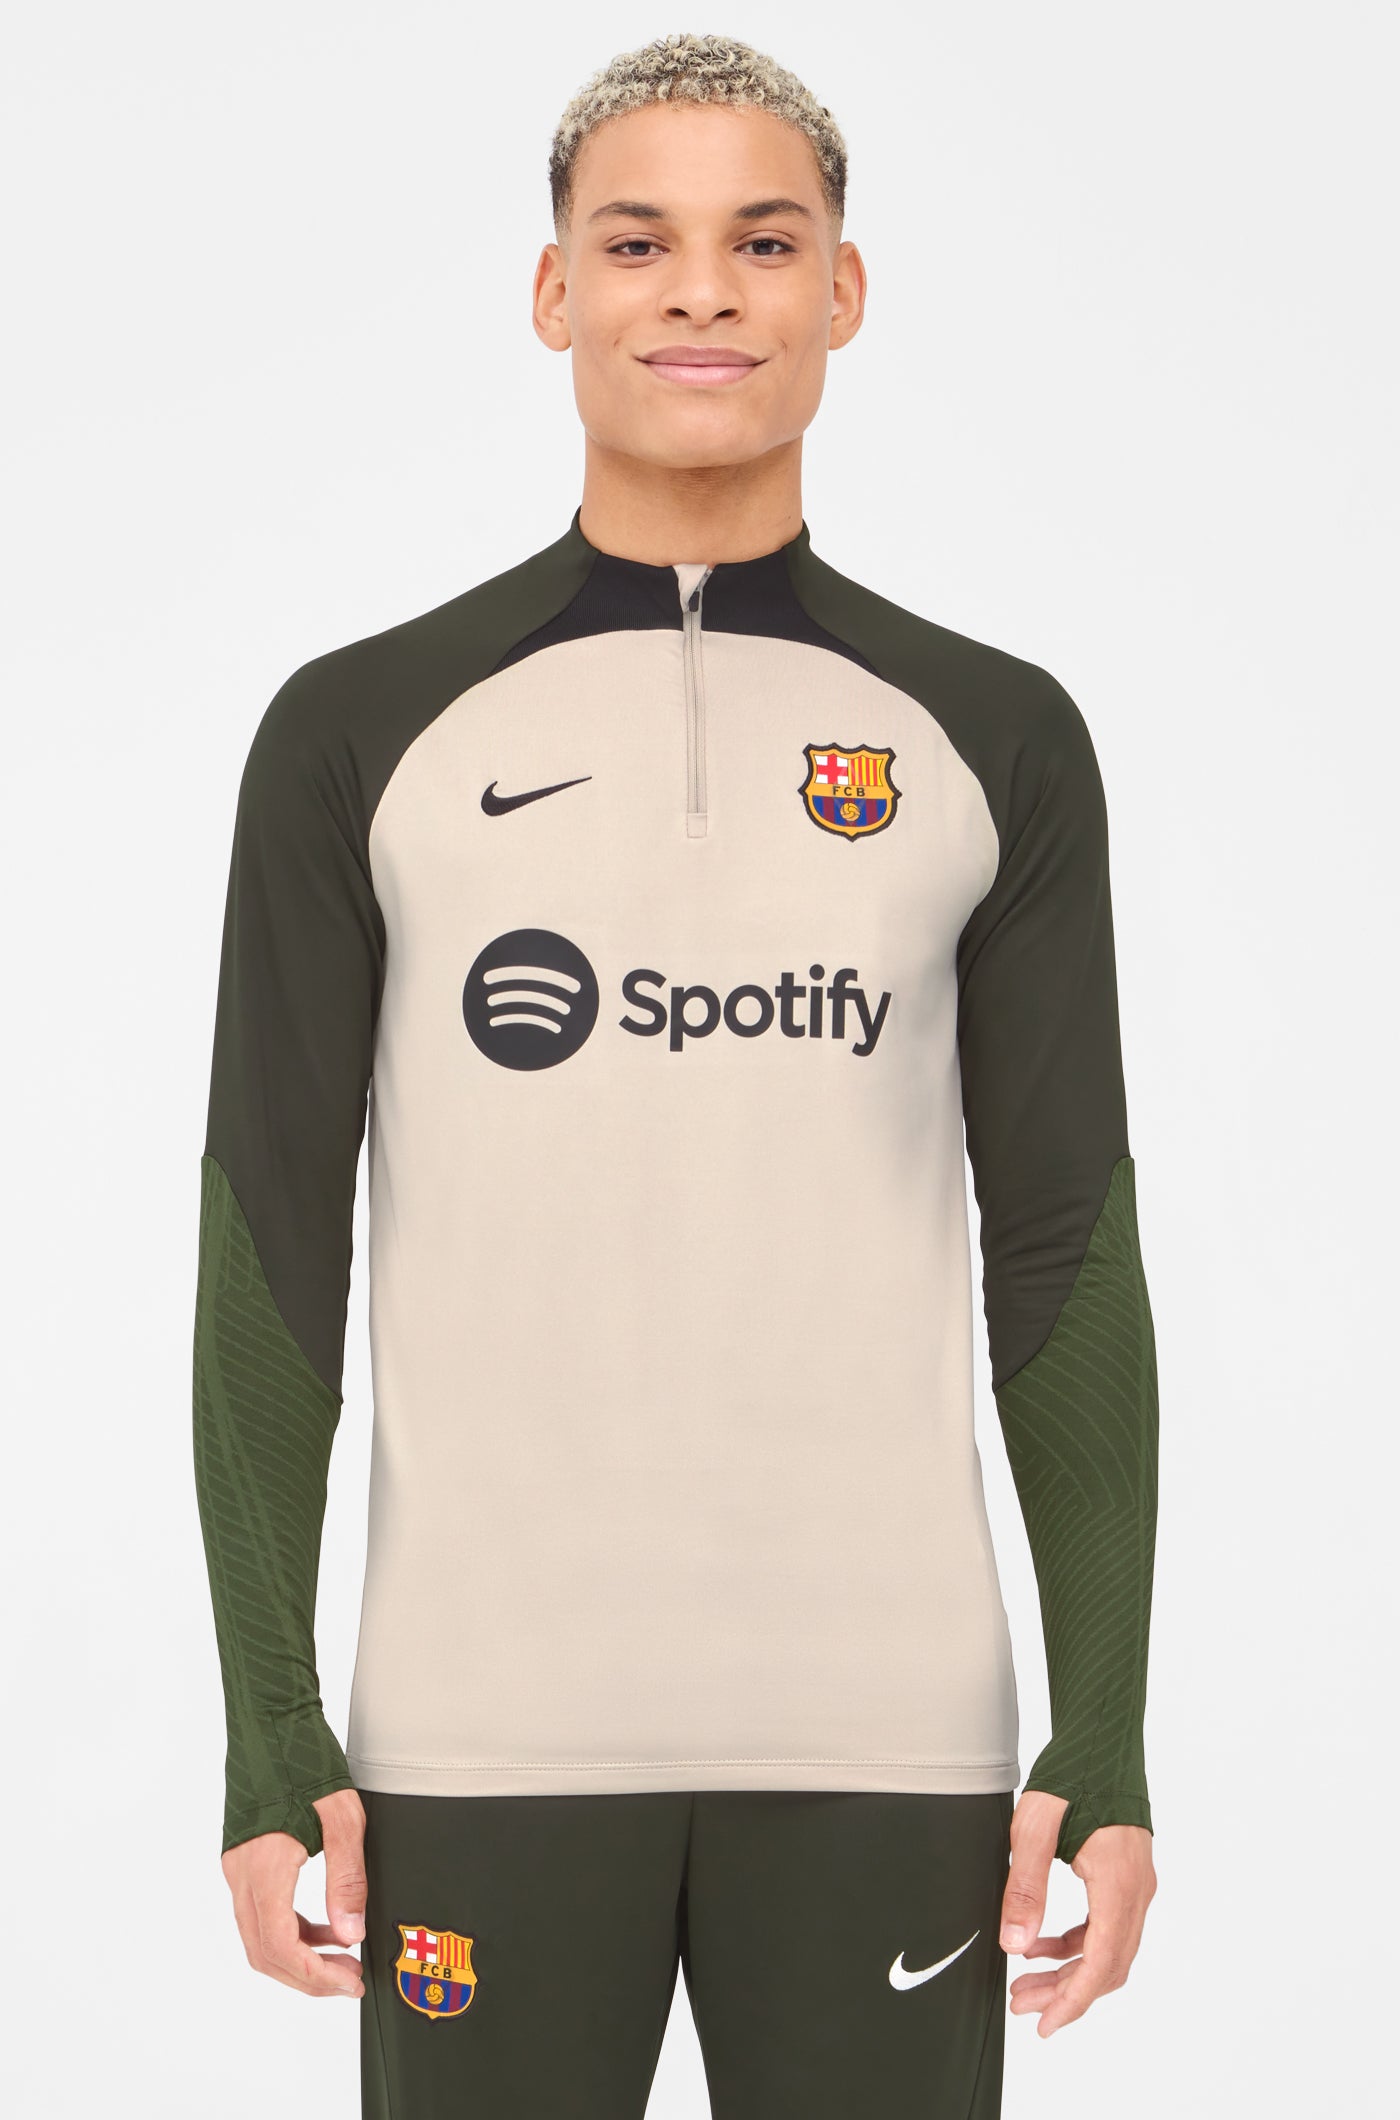 Temporizador Sinceramente Ladrillo Kits de entrenamiento – Barça Official Store Spotify Camp Nou